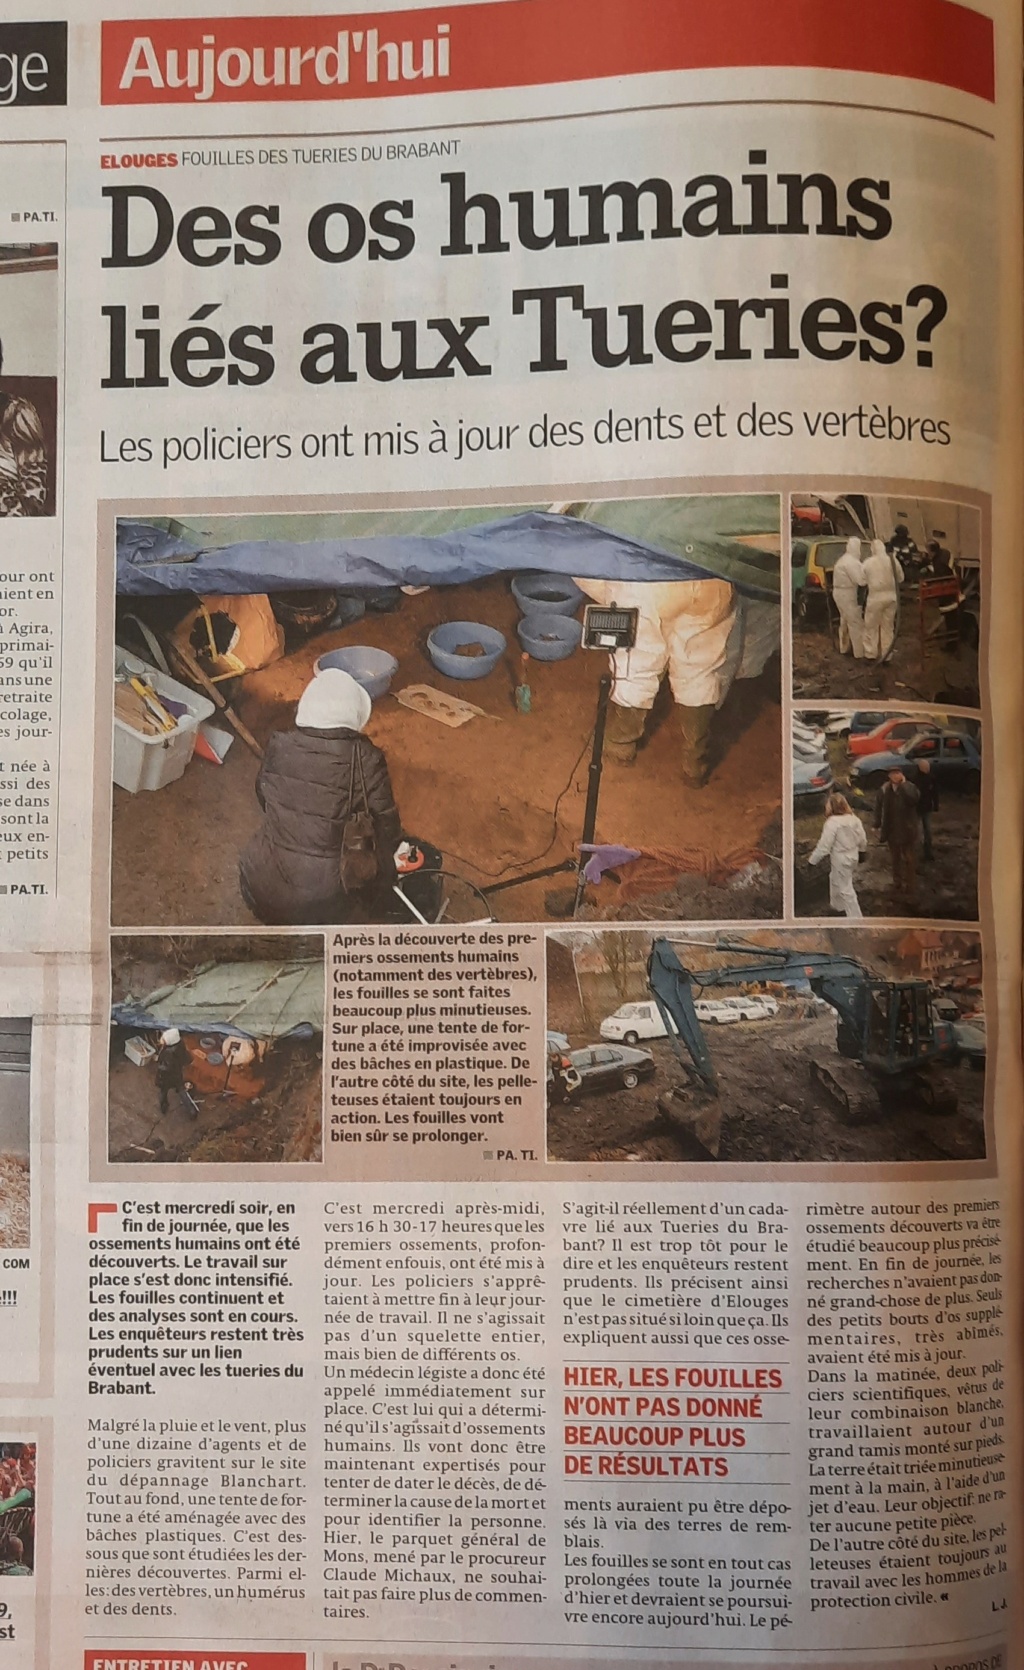 lesoir.be 20/01/2009 (fouilles dans le Borinage) - Page 6 20090113